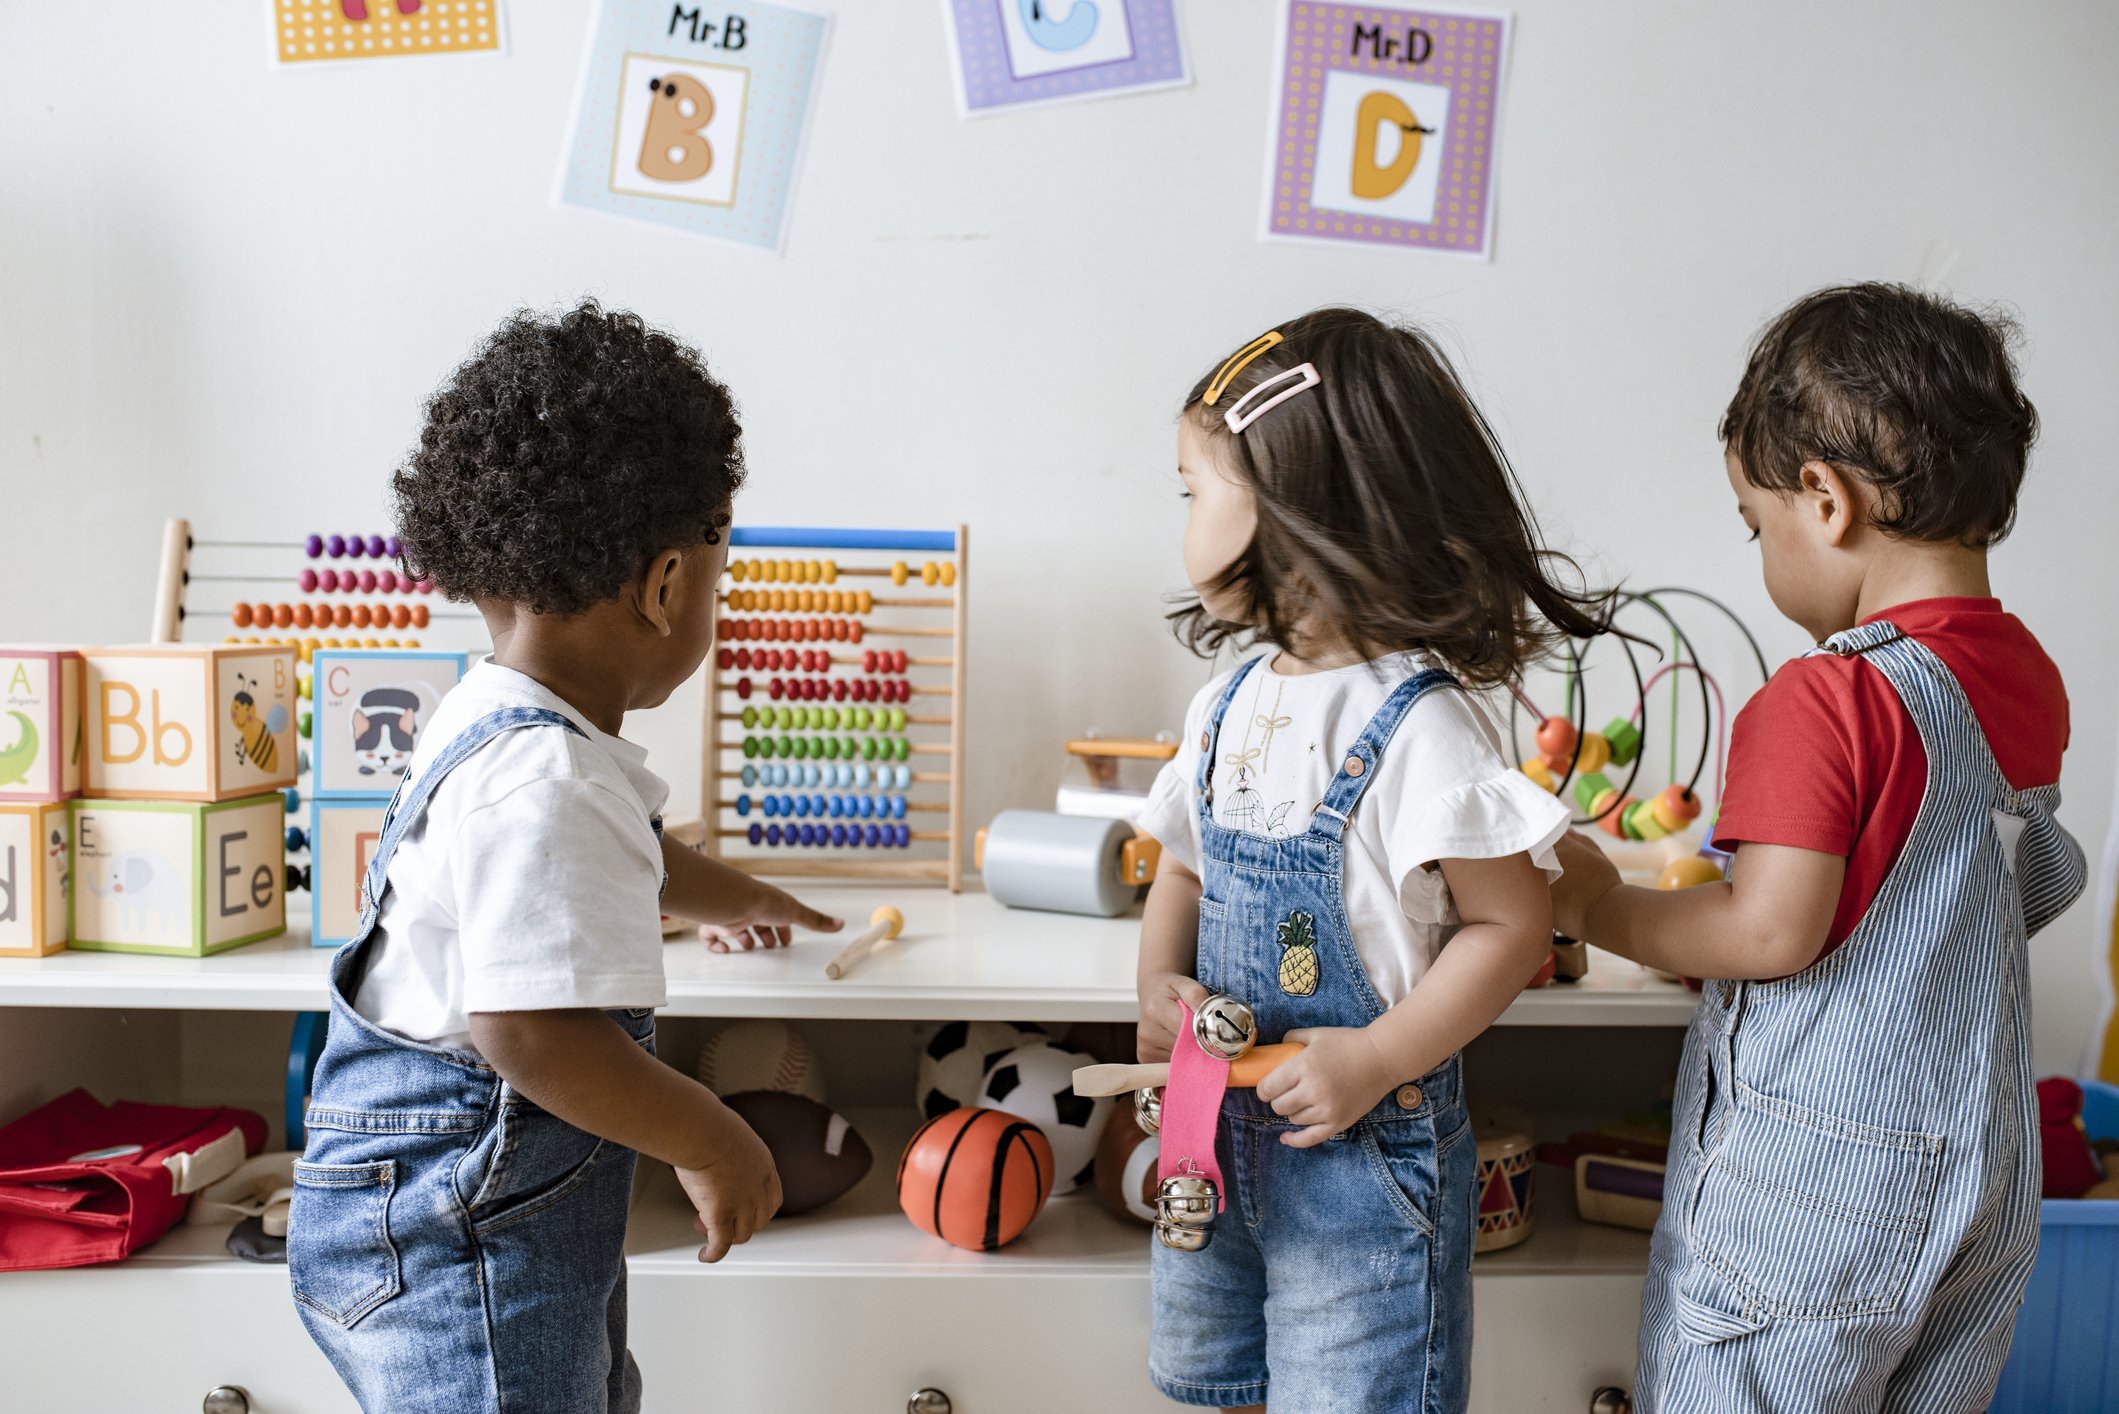 La educación de calidad en la primera infancia tiene un importante impacto en las siguientes etapas de la vida, indican investigaciones.